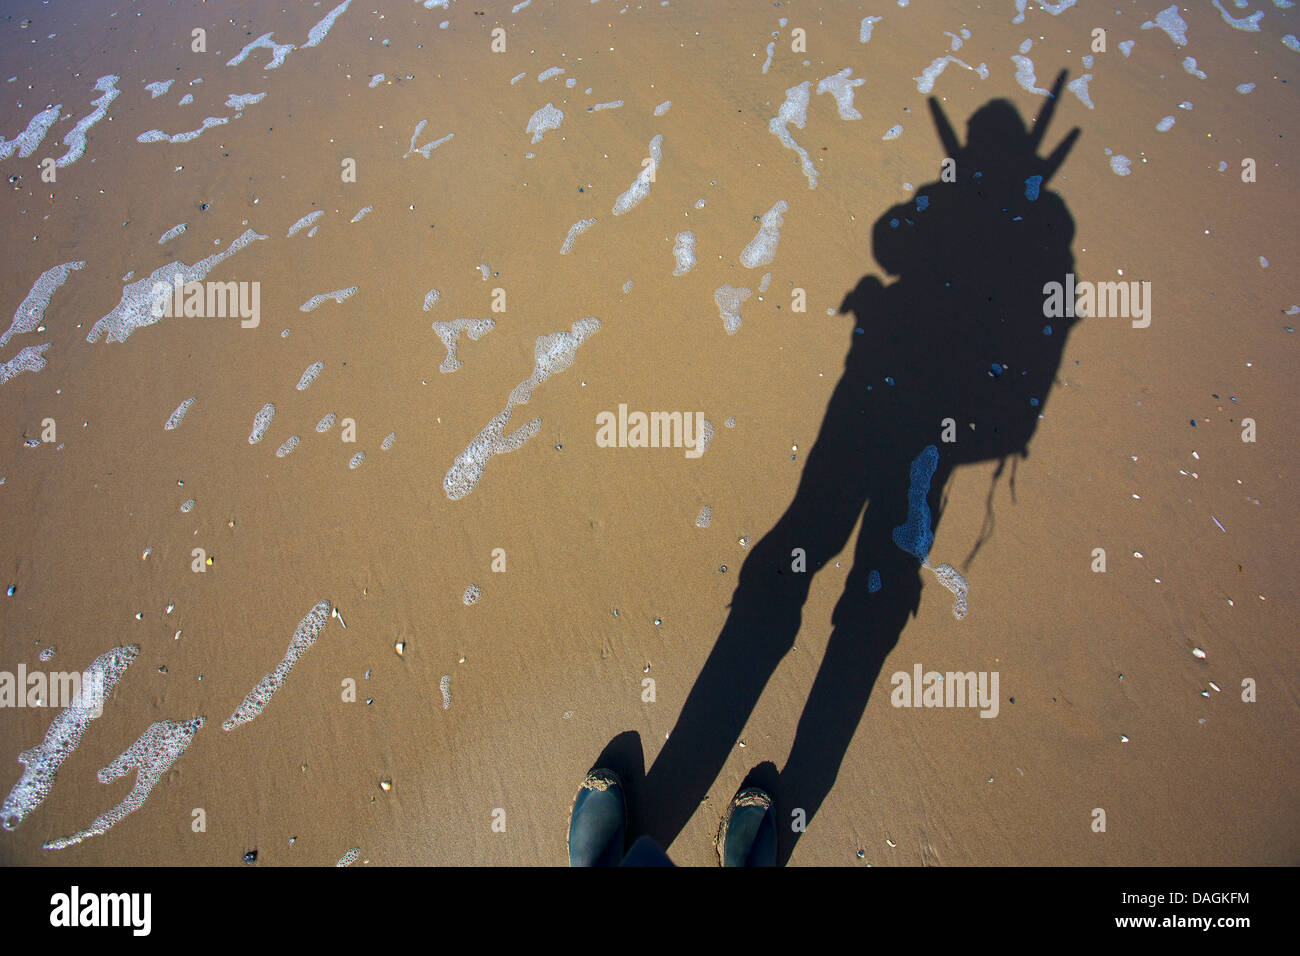 Ombra di un fotografo nella sabbia, Belgio Foto Stock